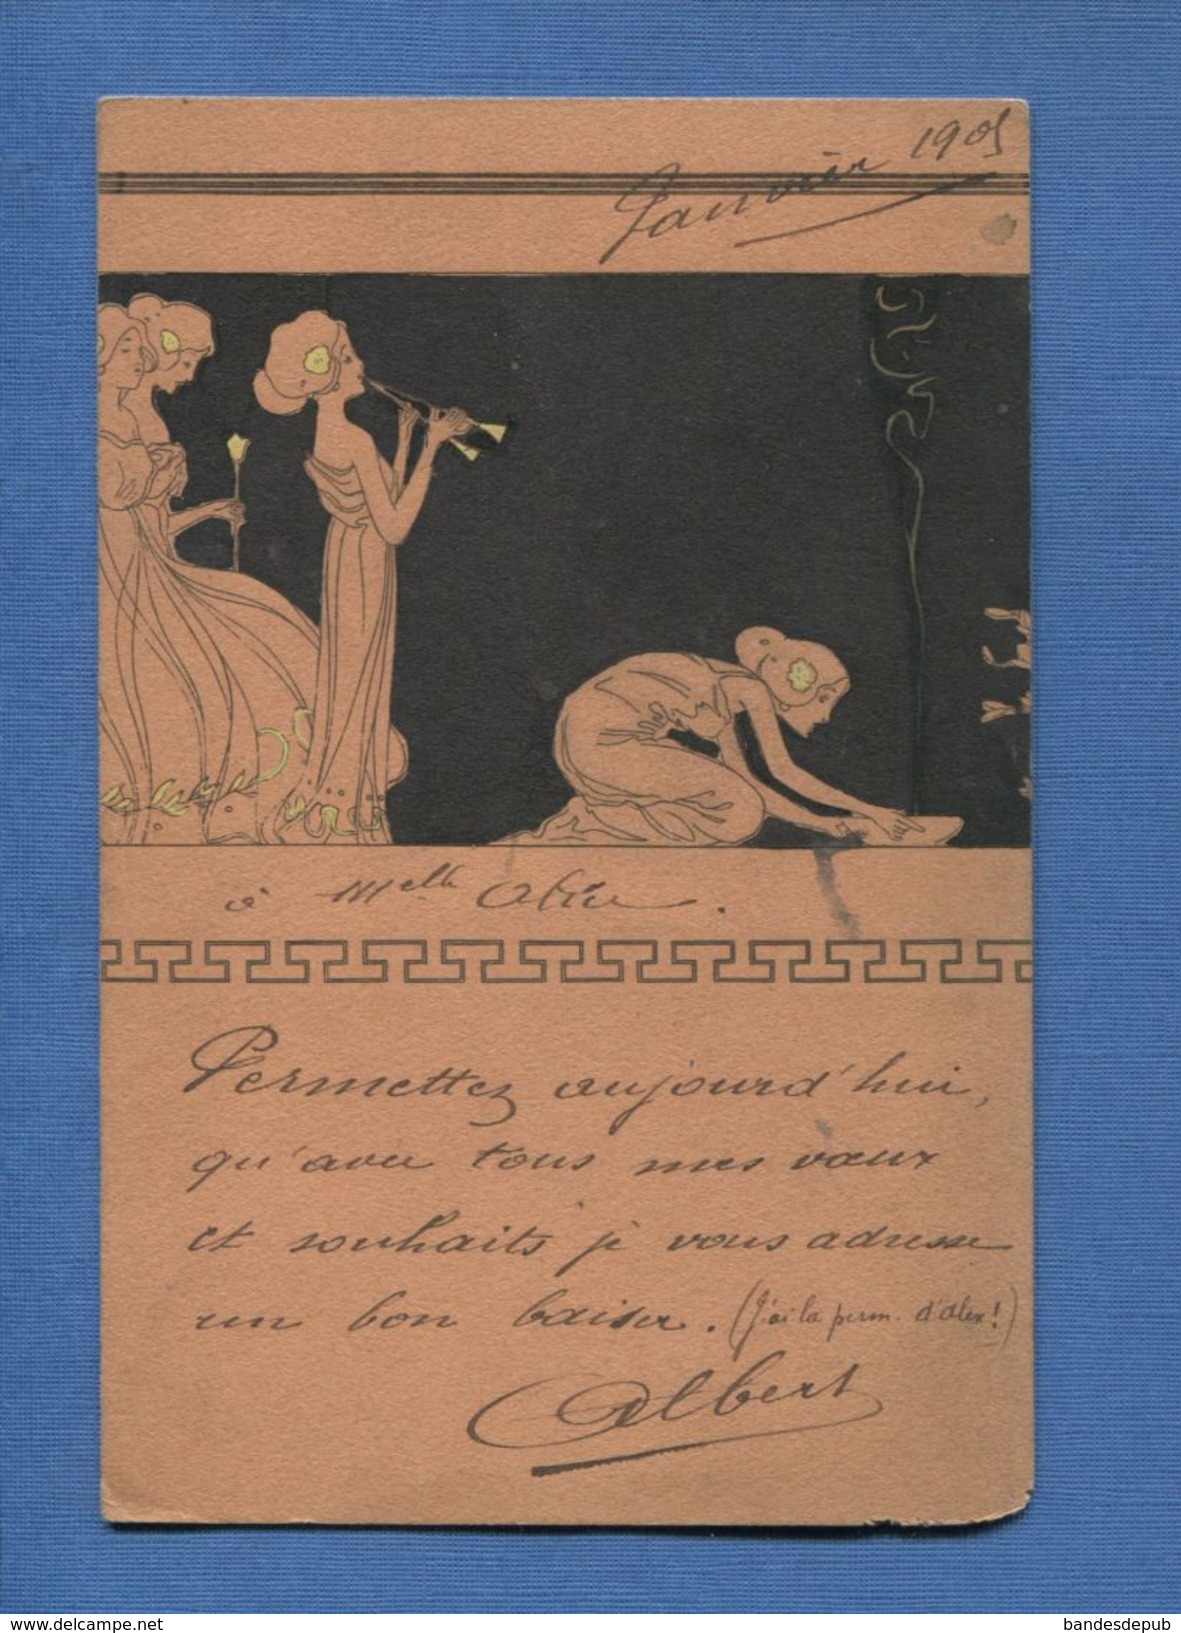 RARE CPA KIRCHNER SERIE GRECE ANTIQUE  TECHNIQUE POCHOIR VOYAGÉ 1905 BACCARAT - Kirchner, Raphael